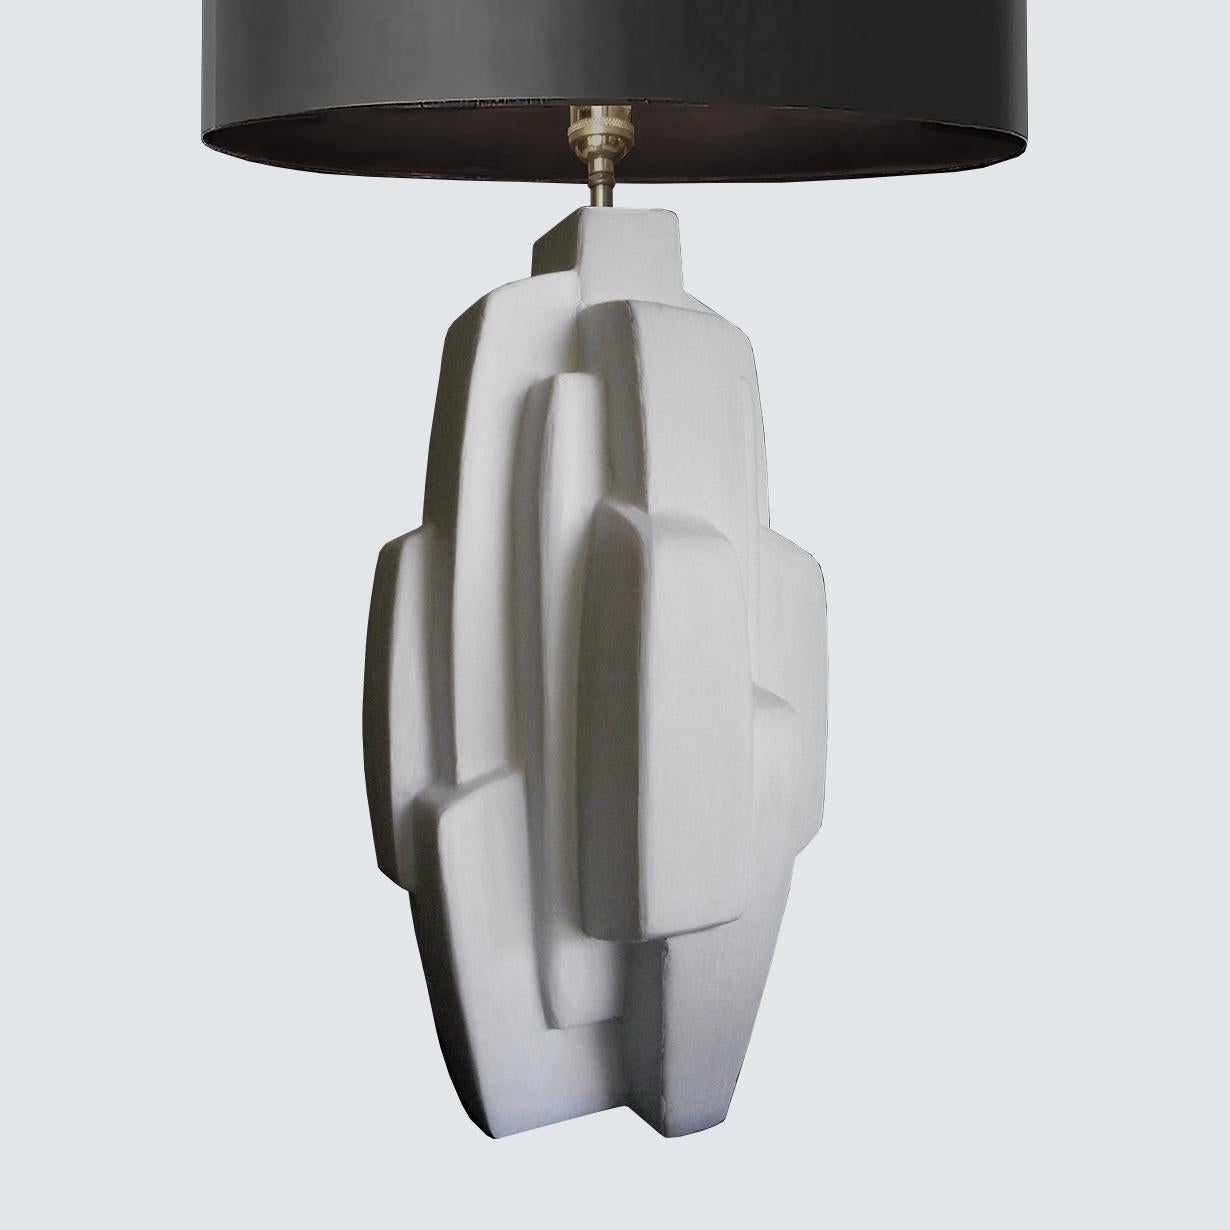 Cloud Tischlampe von Daniel Schneiger
Abmessungen: T24 x B24 x H53 cm
MATERIALIEN: Holz, Schaumstoff und Harz.
Schirm nicht enthalten. Kundenspezifische Ausführungen verfügbar. Bitte kontaktieren Sie uns.

Alle unsere Lampen können je nach Land